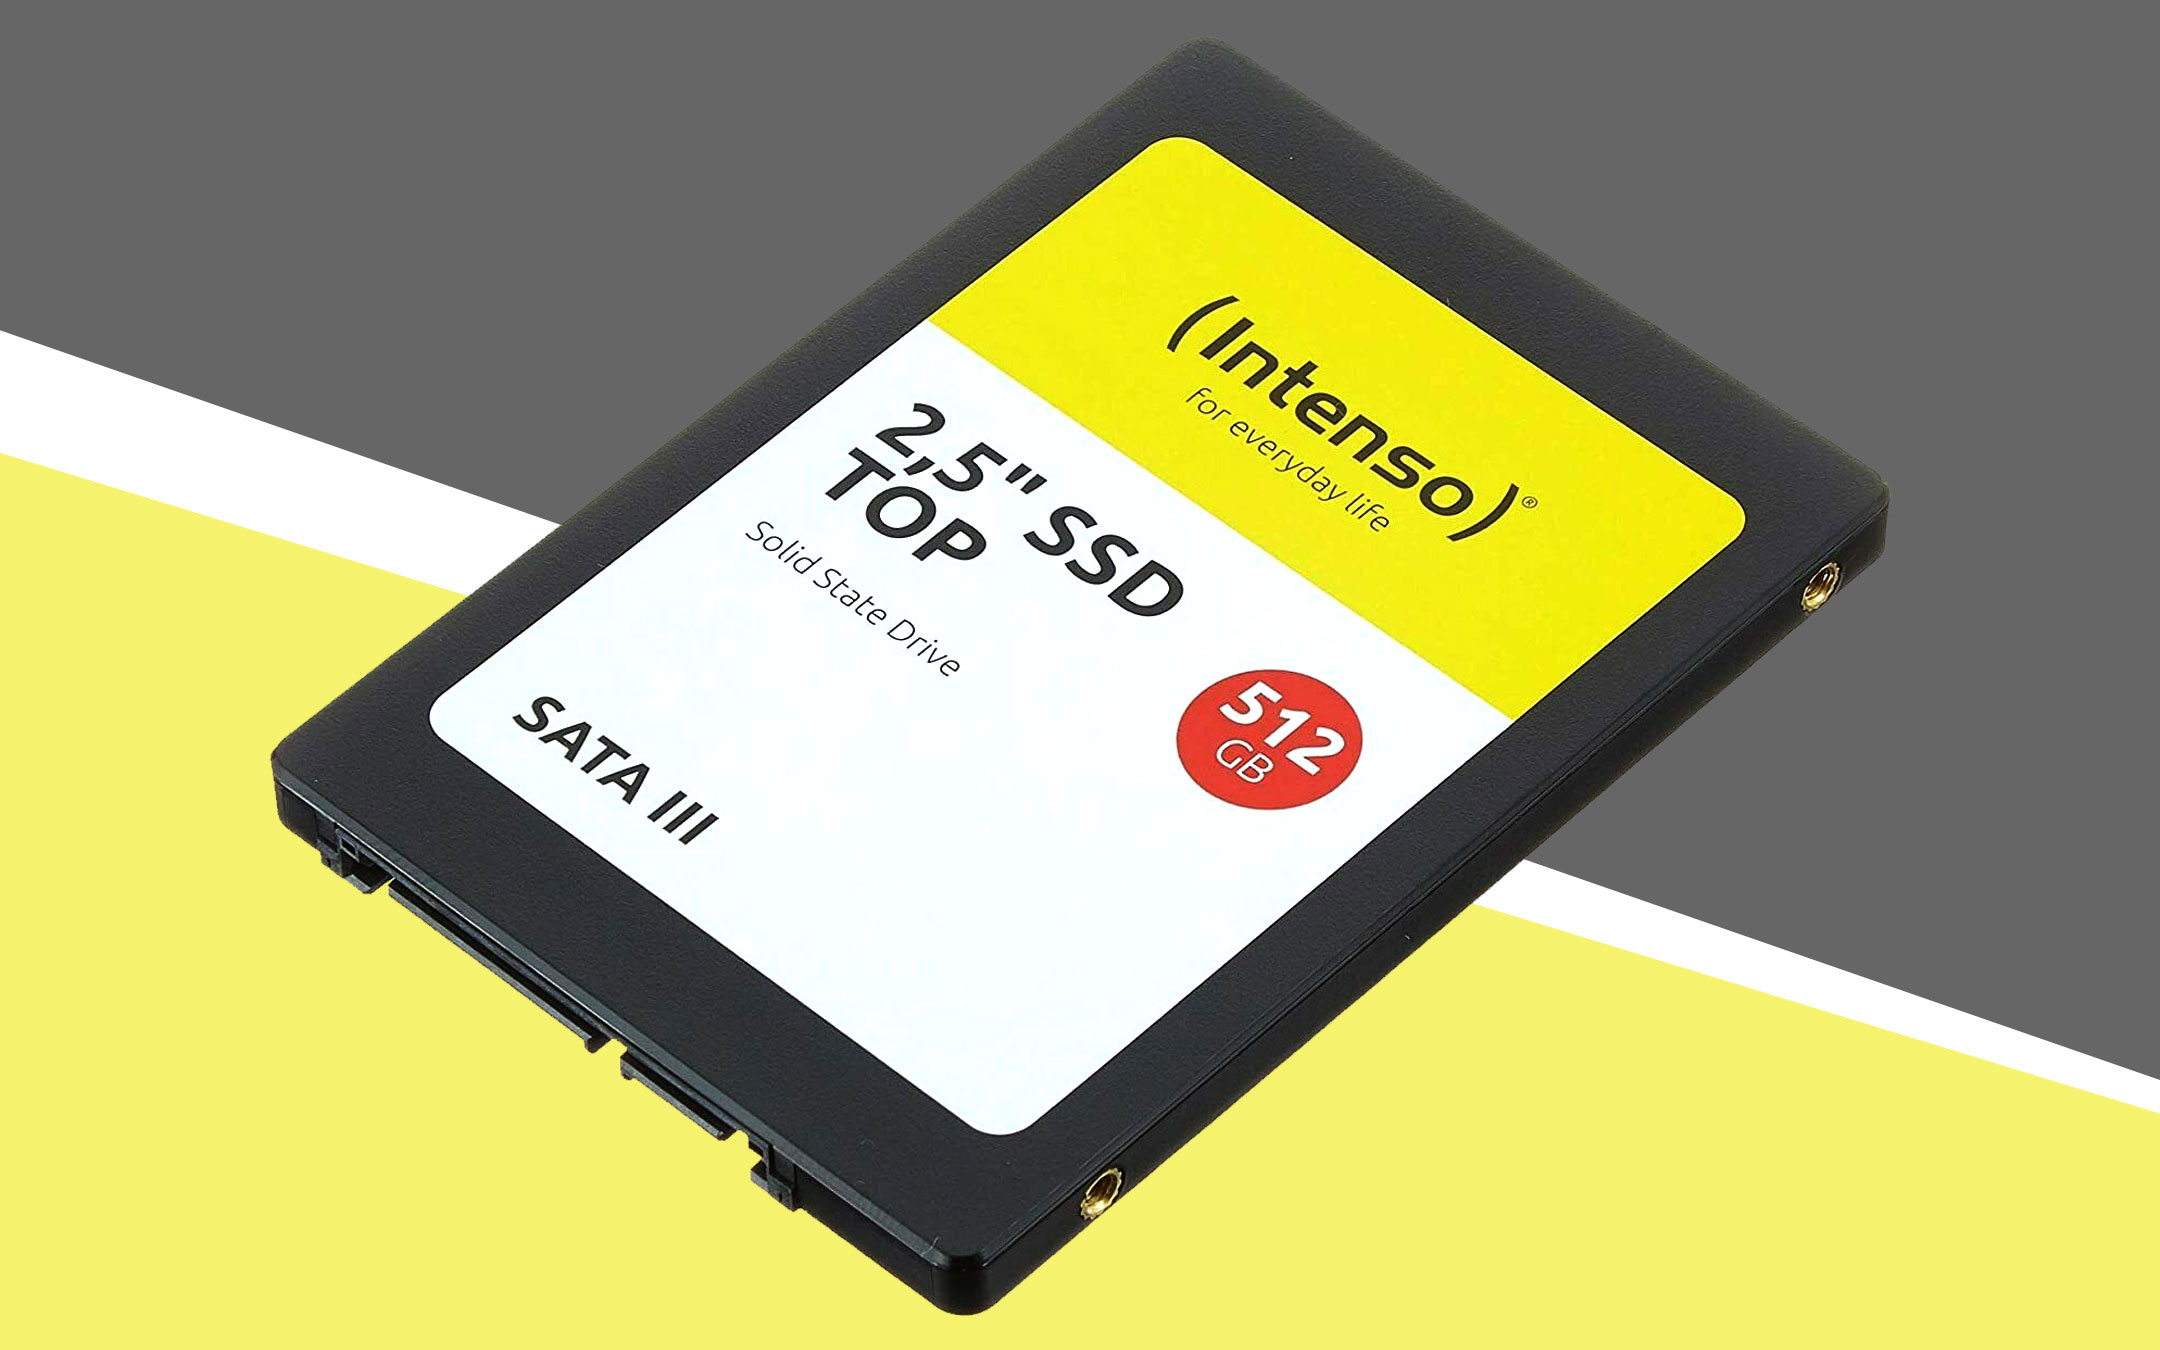 SSD Intenso 512 GB a soli 49,90 euro: l’occasione su eBay